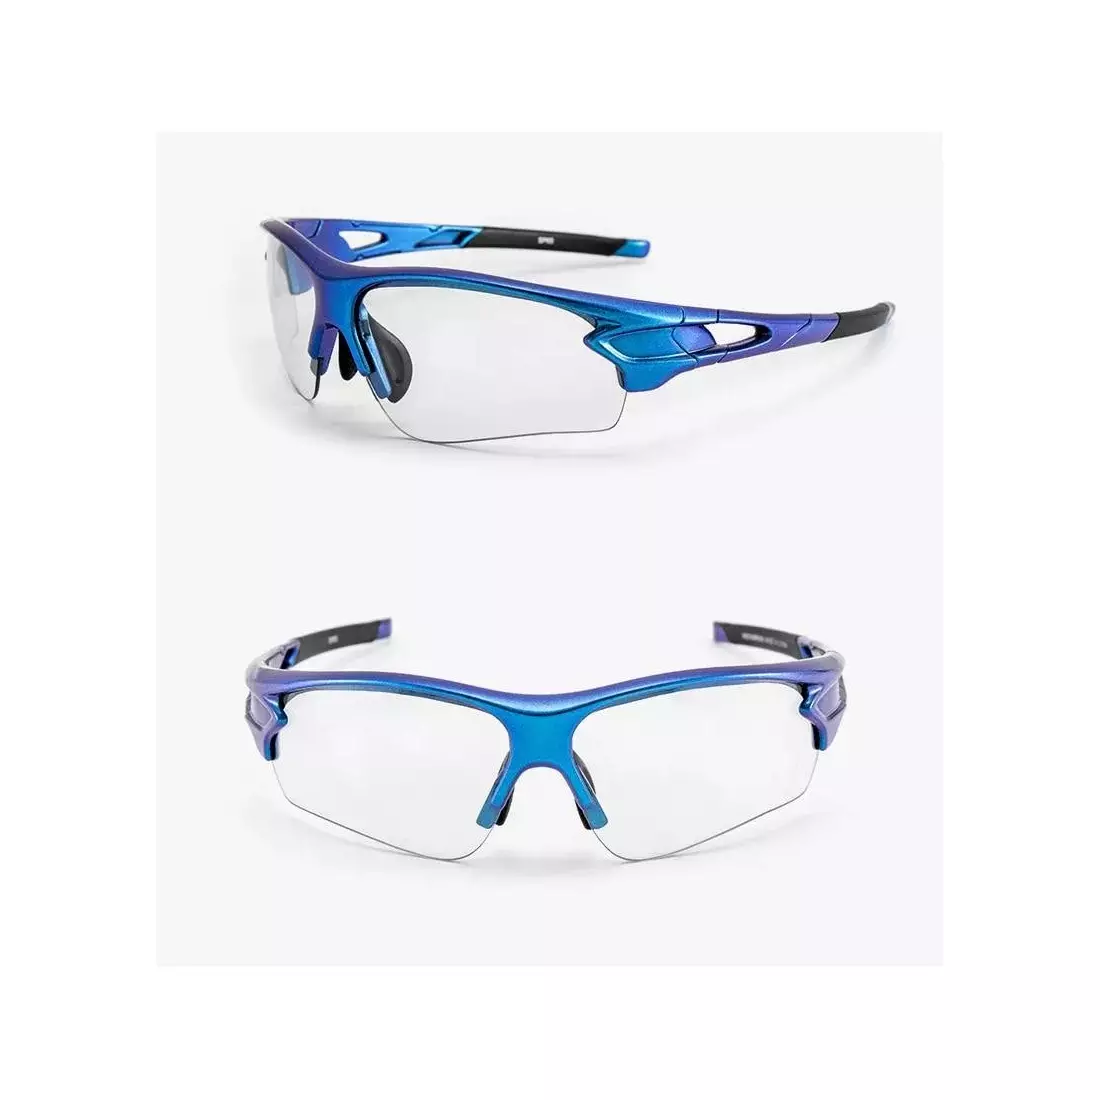 Cyklistické/sportovní brýle Rockbros s fotochromově modrou 10069